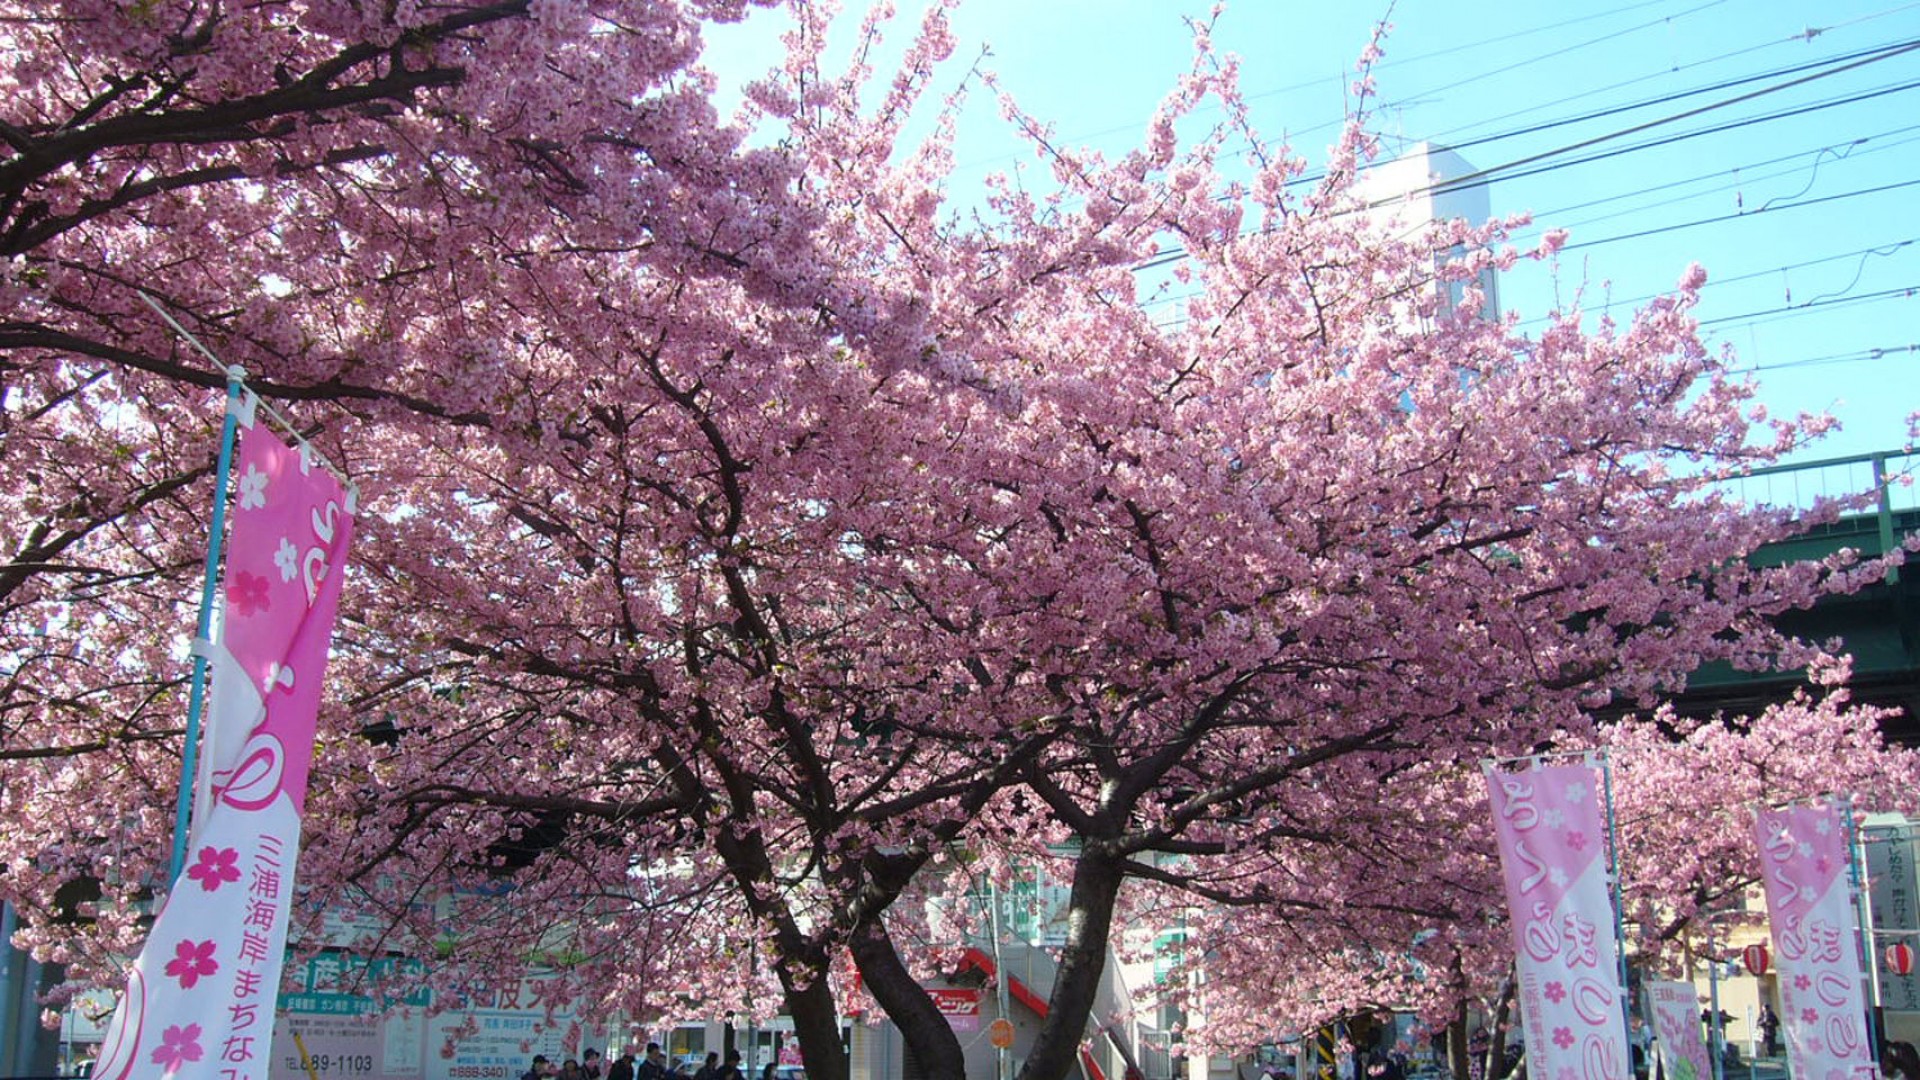 Le festival des cerisiers en fleurs de Miura Kaigan